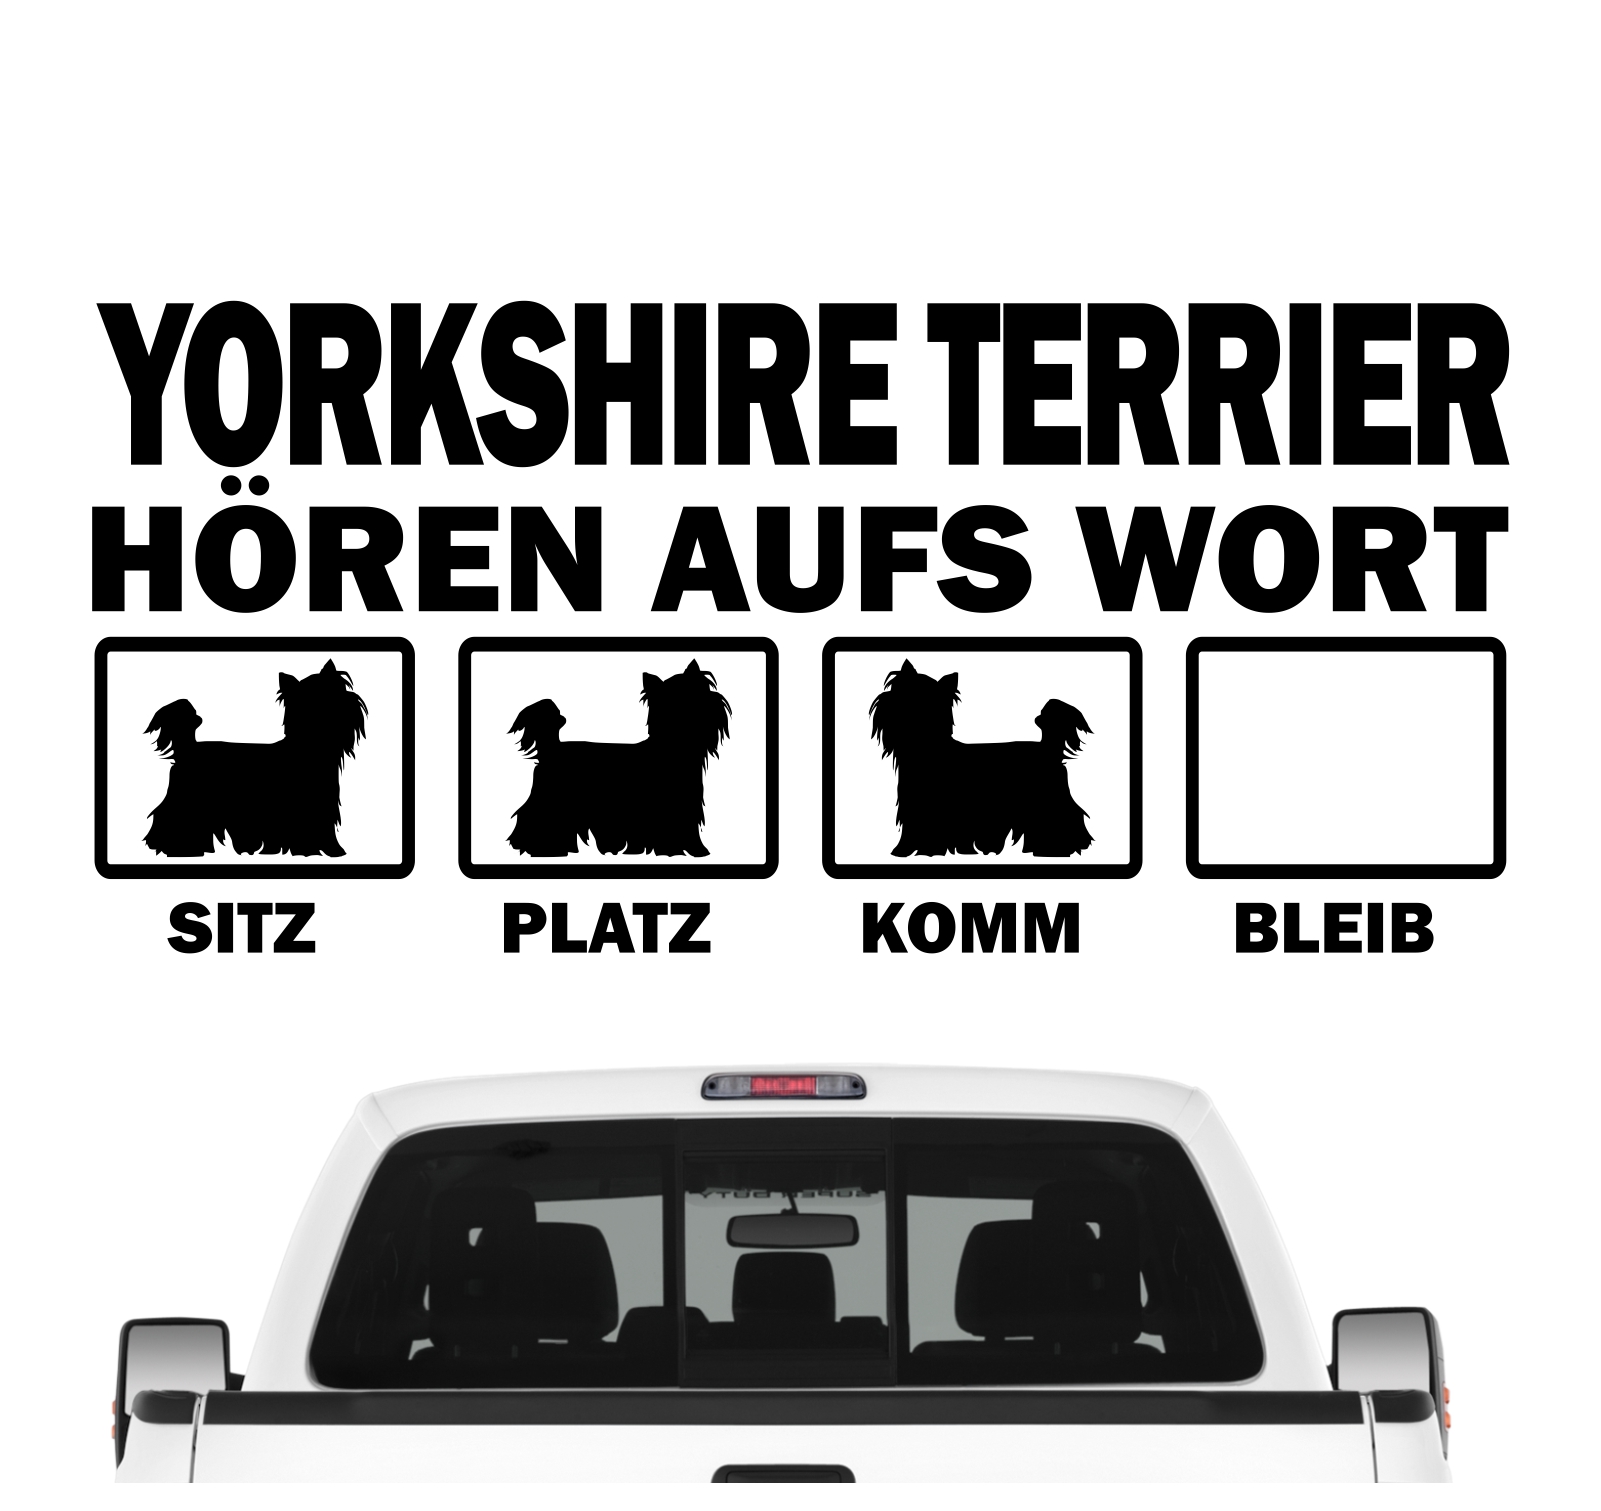 Yorkshire Terrier Yorkie Hört aufs Wort Hunde Aufkleber Sticker  Autoaufkleber Wandtattoo Tattoo